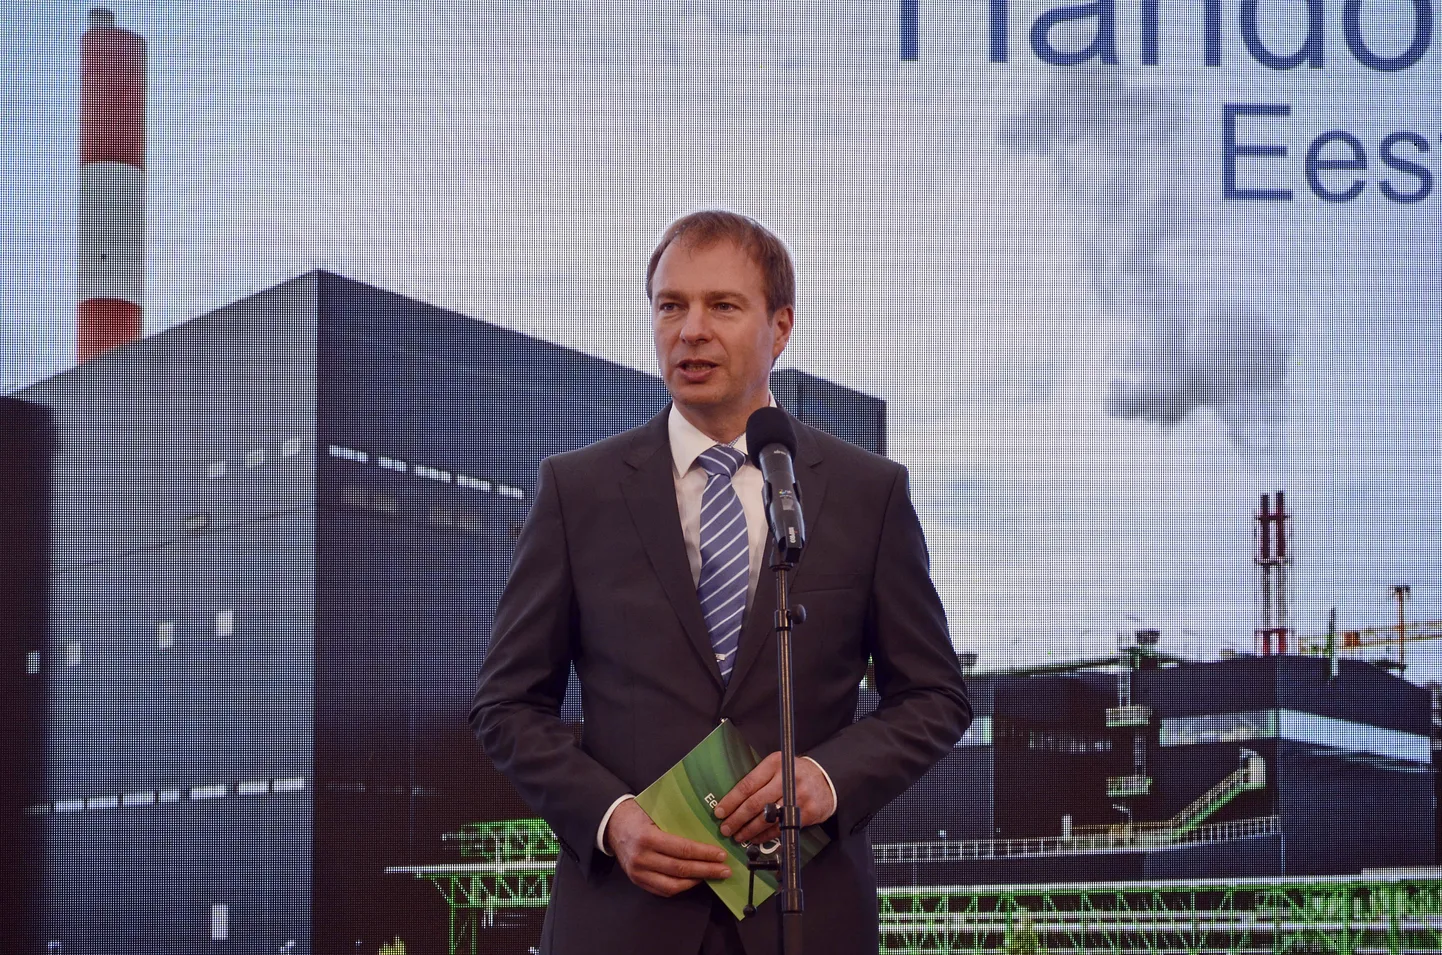 Eesti Energiat alates 2014. aastast juhtinud Hando Sutter saab seda teha veel neli aastat.